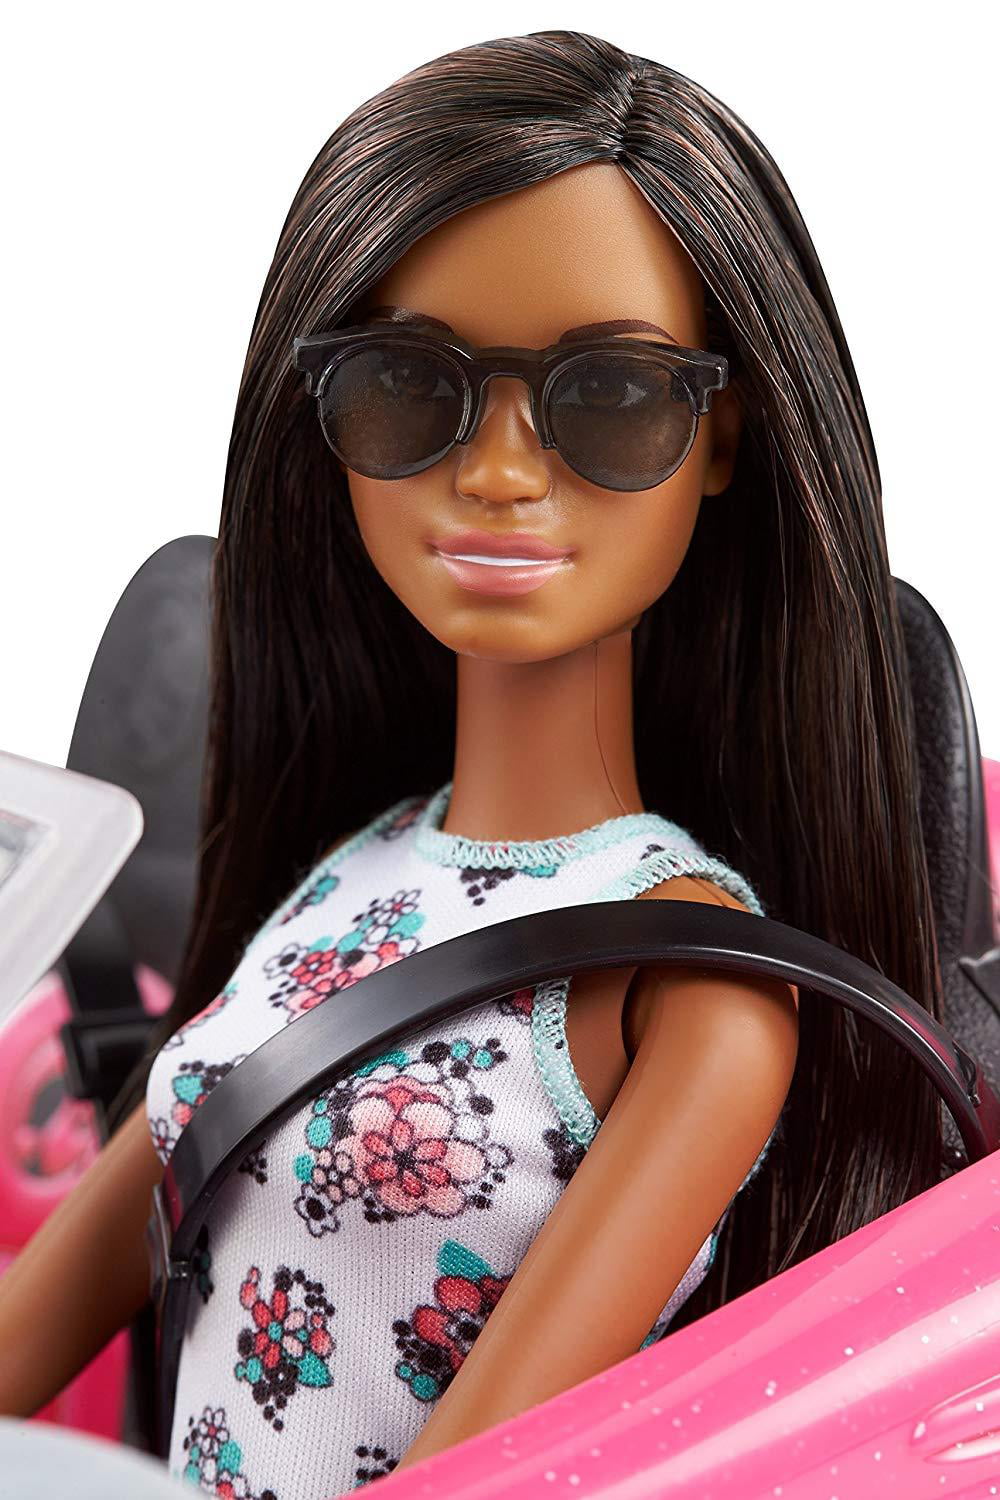 Barbie Doll & Convertible Car Brunette Figure Pink Vehicle Mattel 7efrzh1 FPR58 for sale online